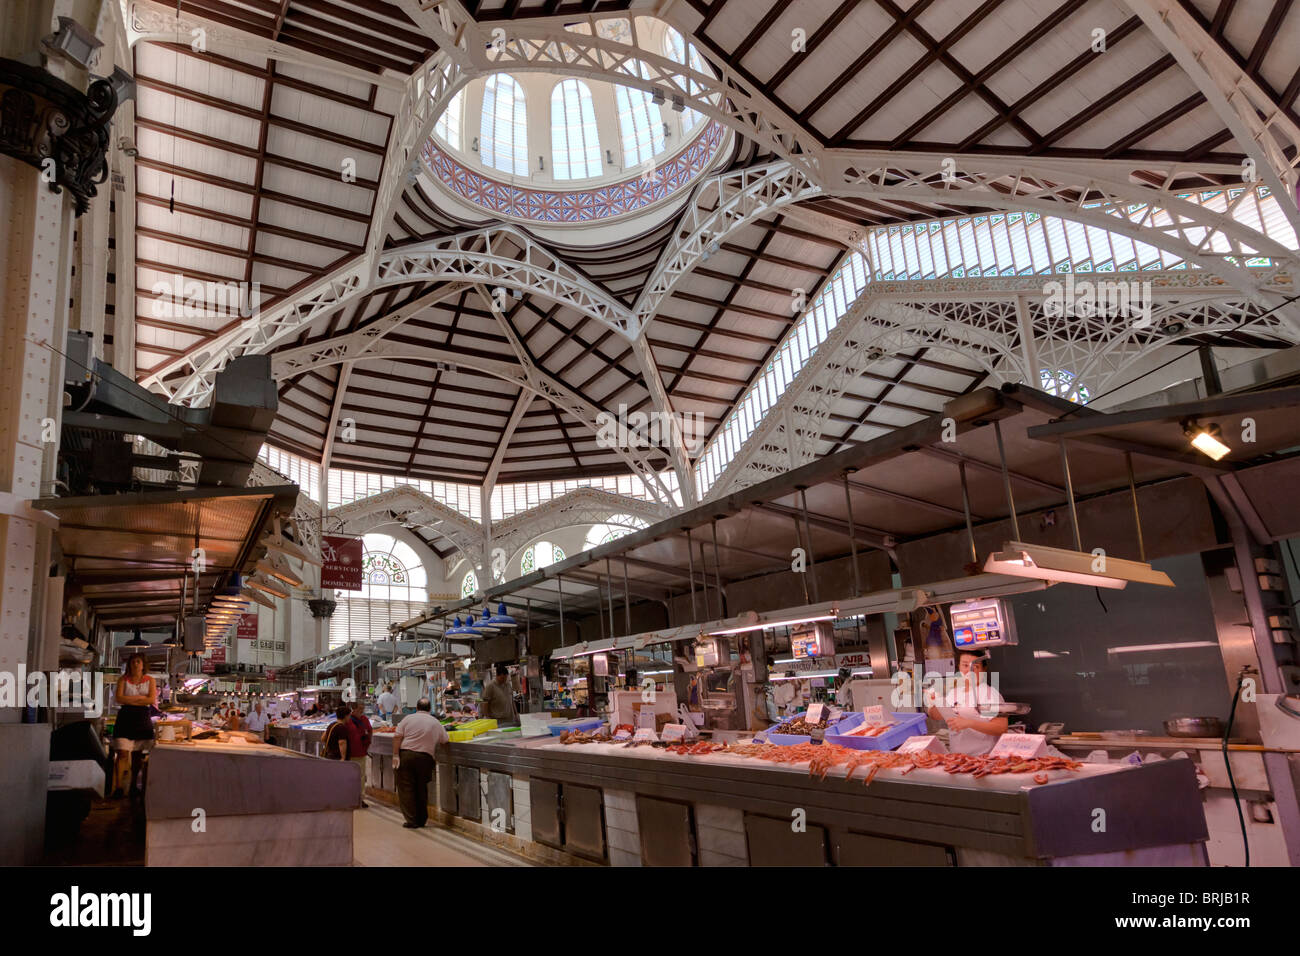 Panoramica parziale del mercato centrale, una struttura metallica decorata con lavori di ceramica, ferro battuto e vetro. Frutti di mare Hall. Foto Stock